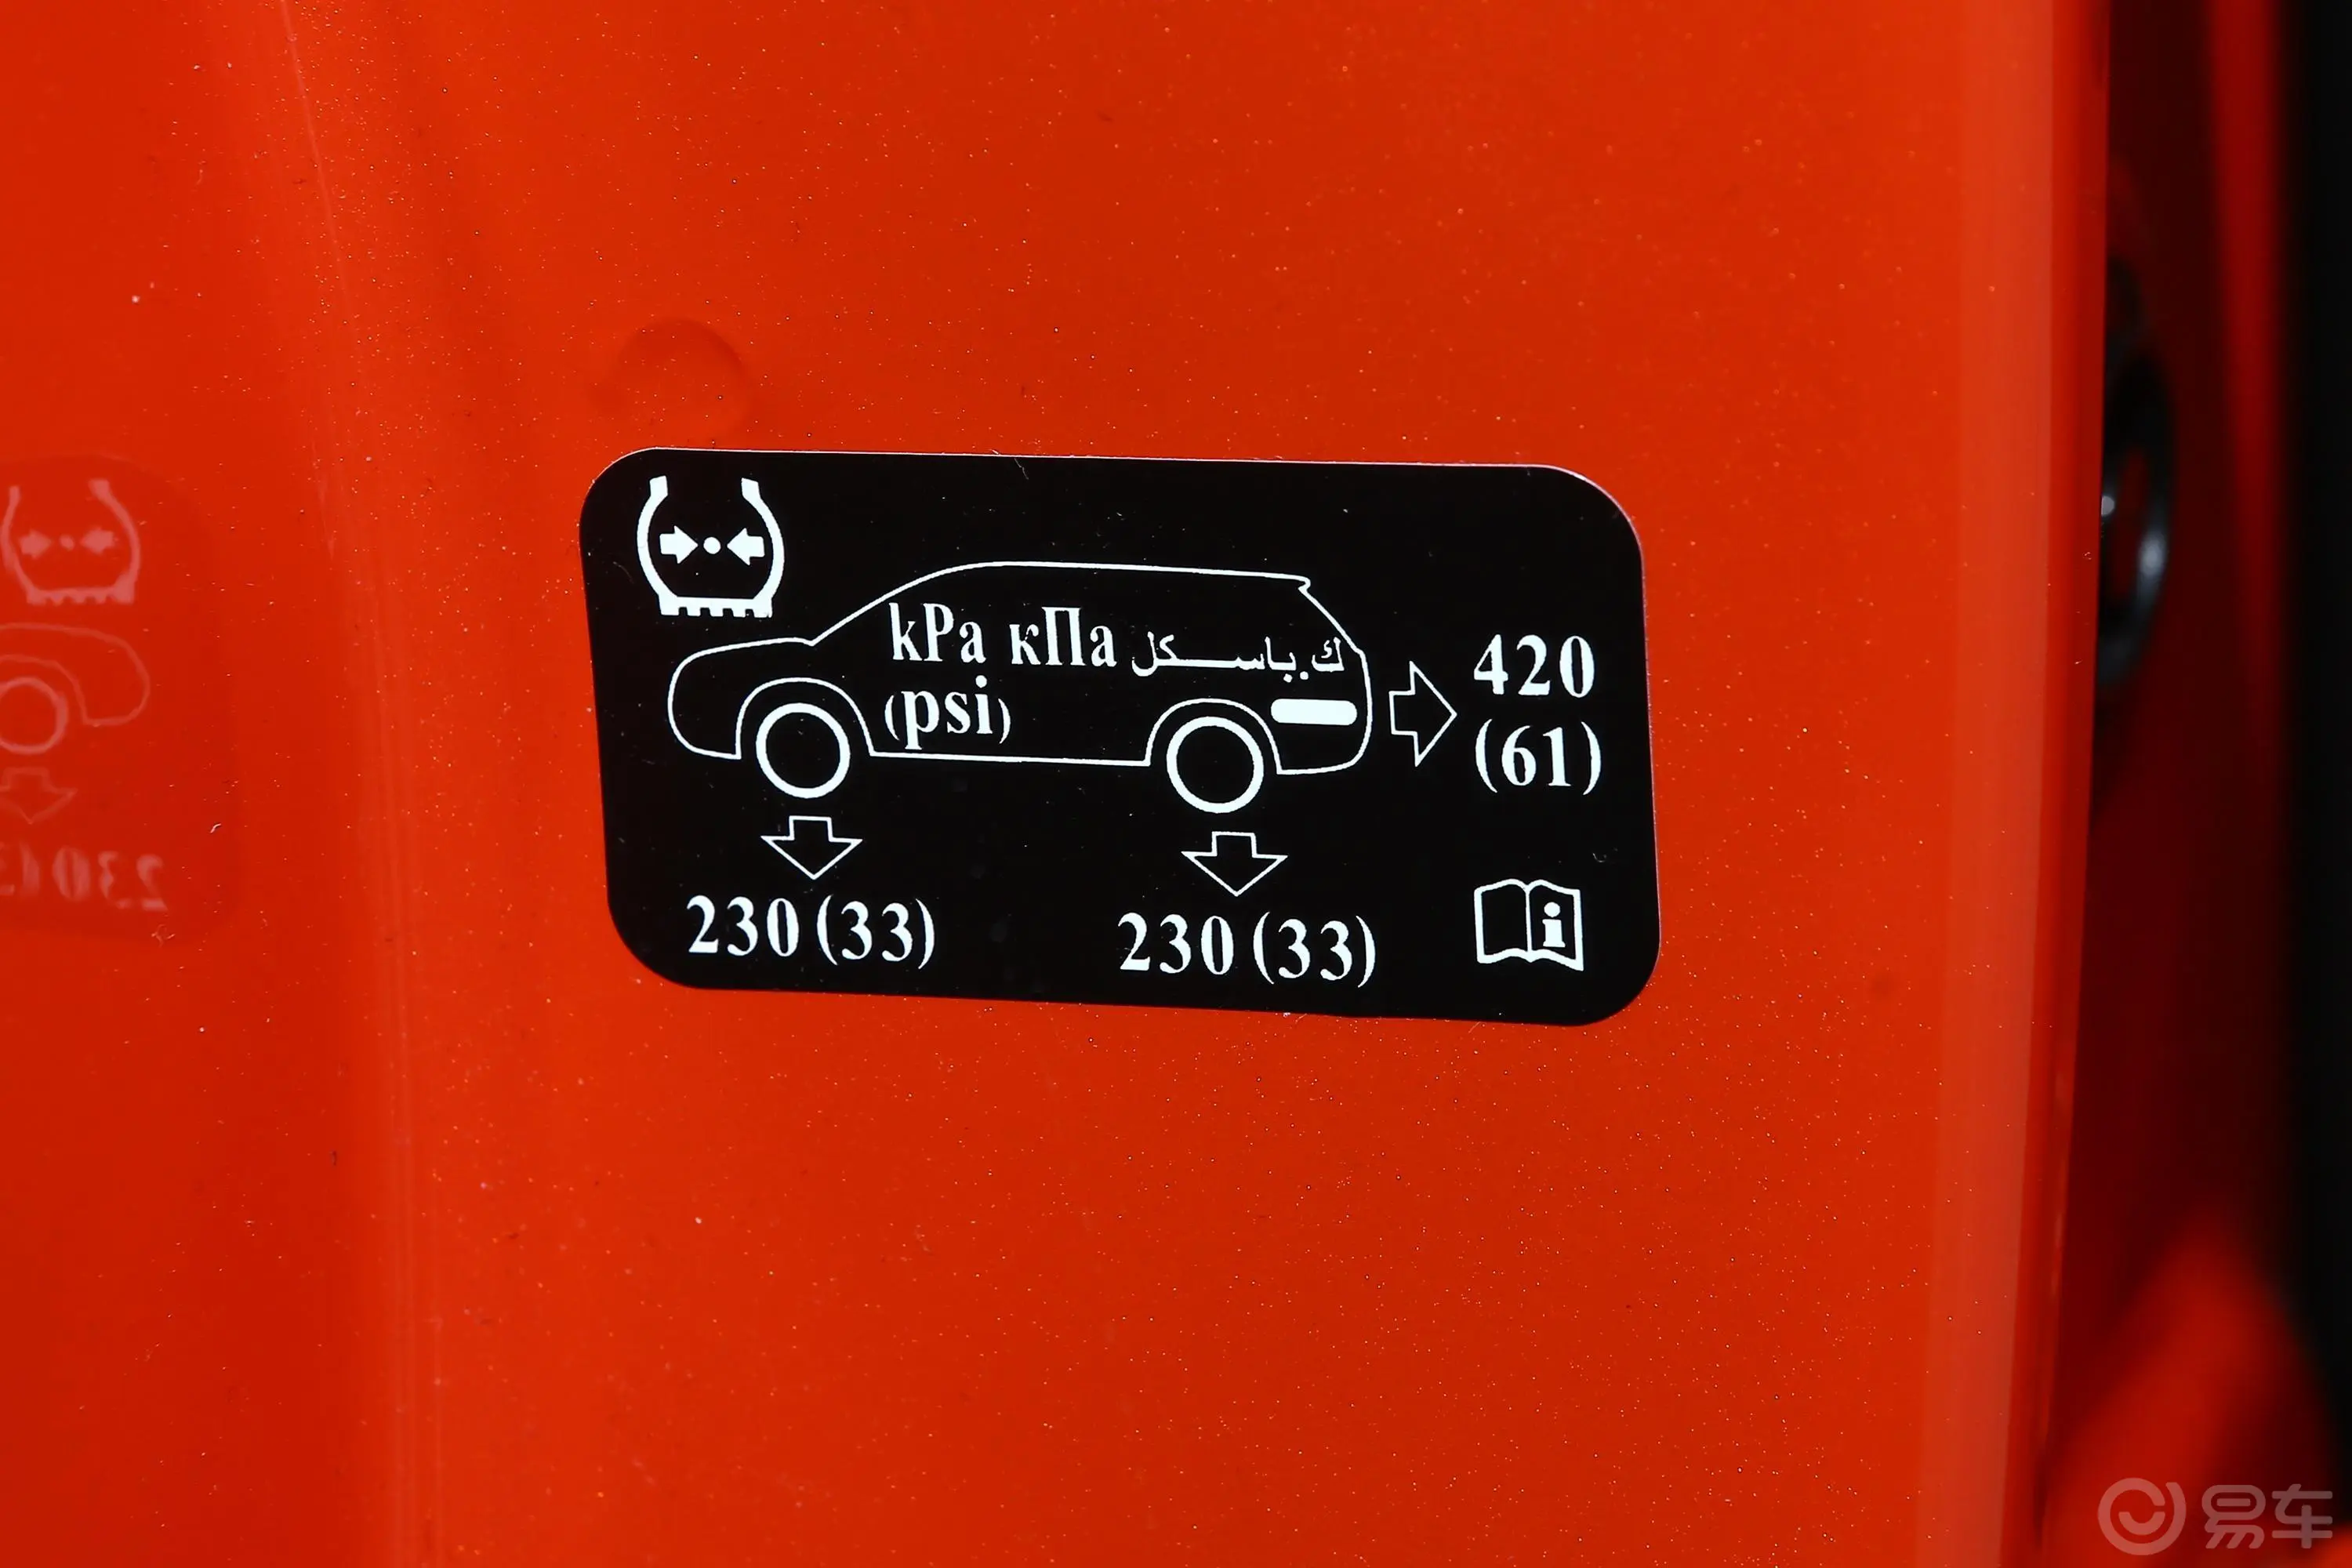 魏牌VV51.5T 双离合 元气橙版胎压信息铭牌